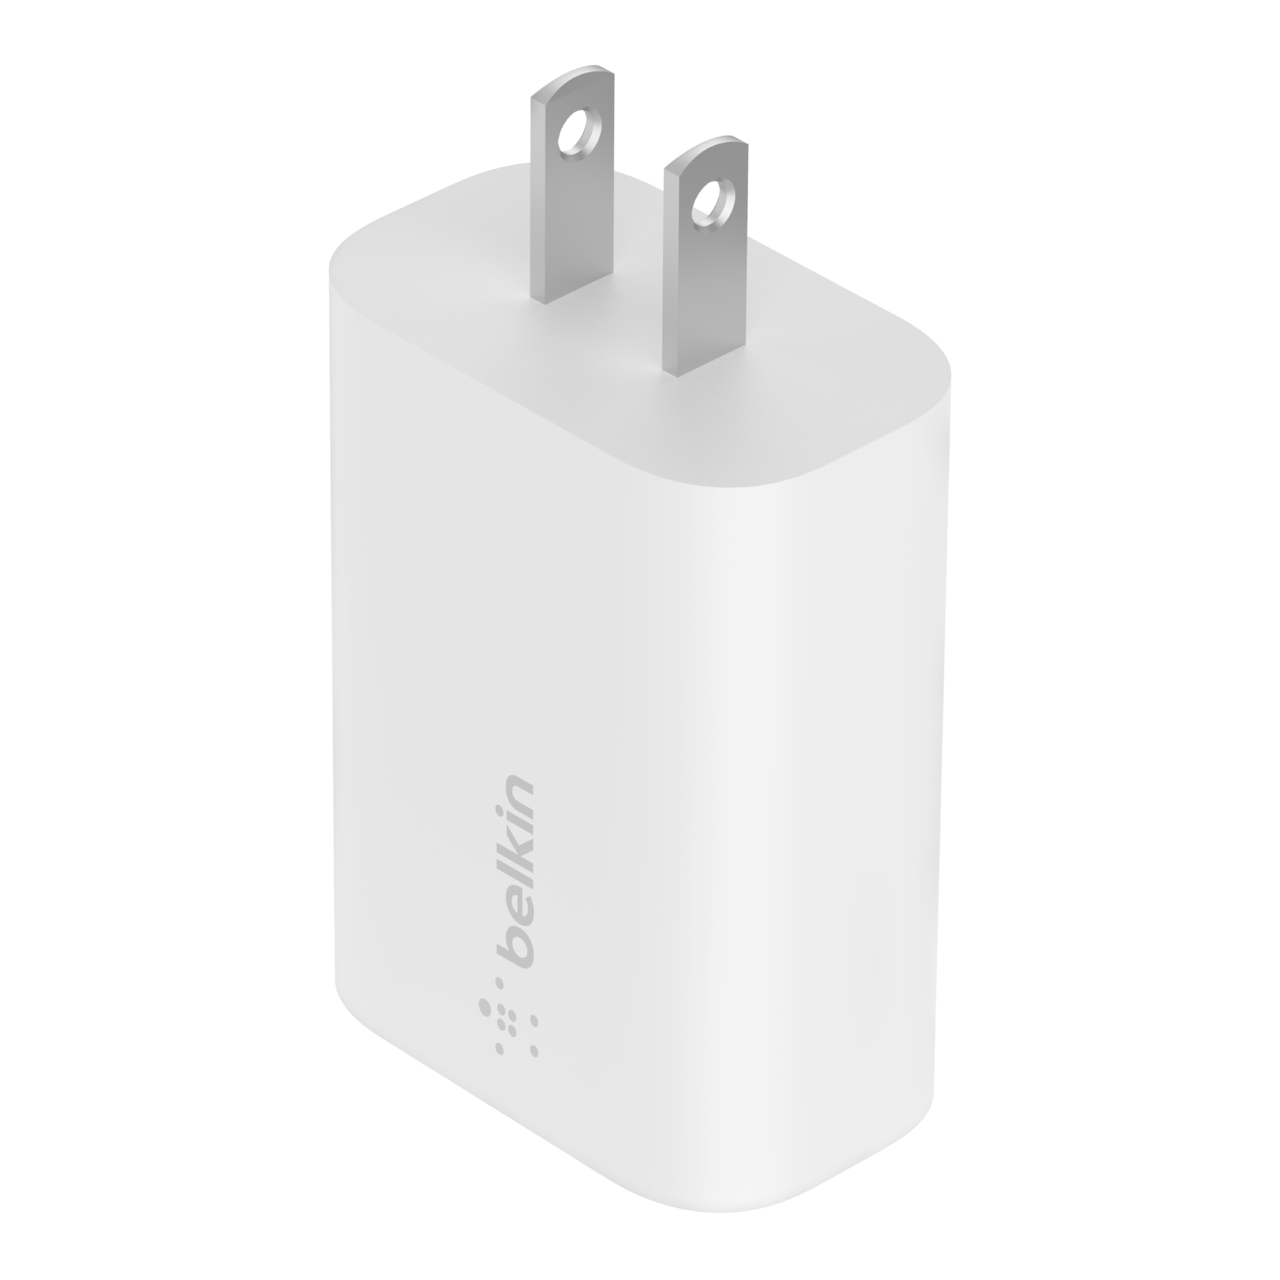 Chargeur USB-C avec câble 25W 3,4A, Chargeur rapide pour téléphone, Chargeur adapté